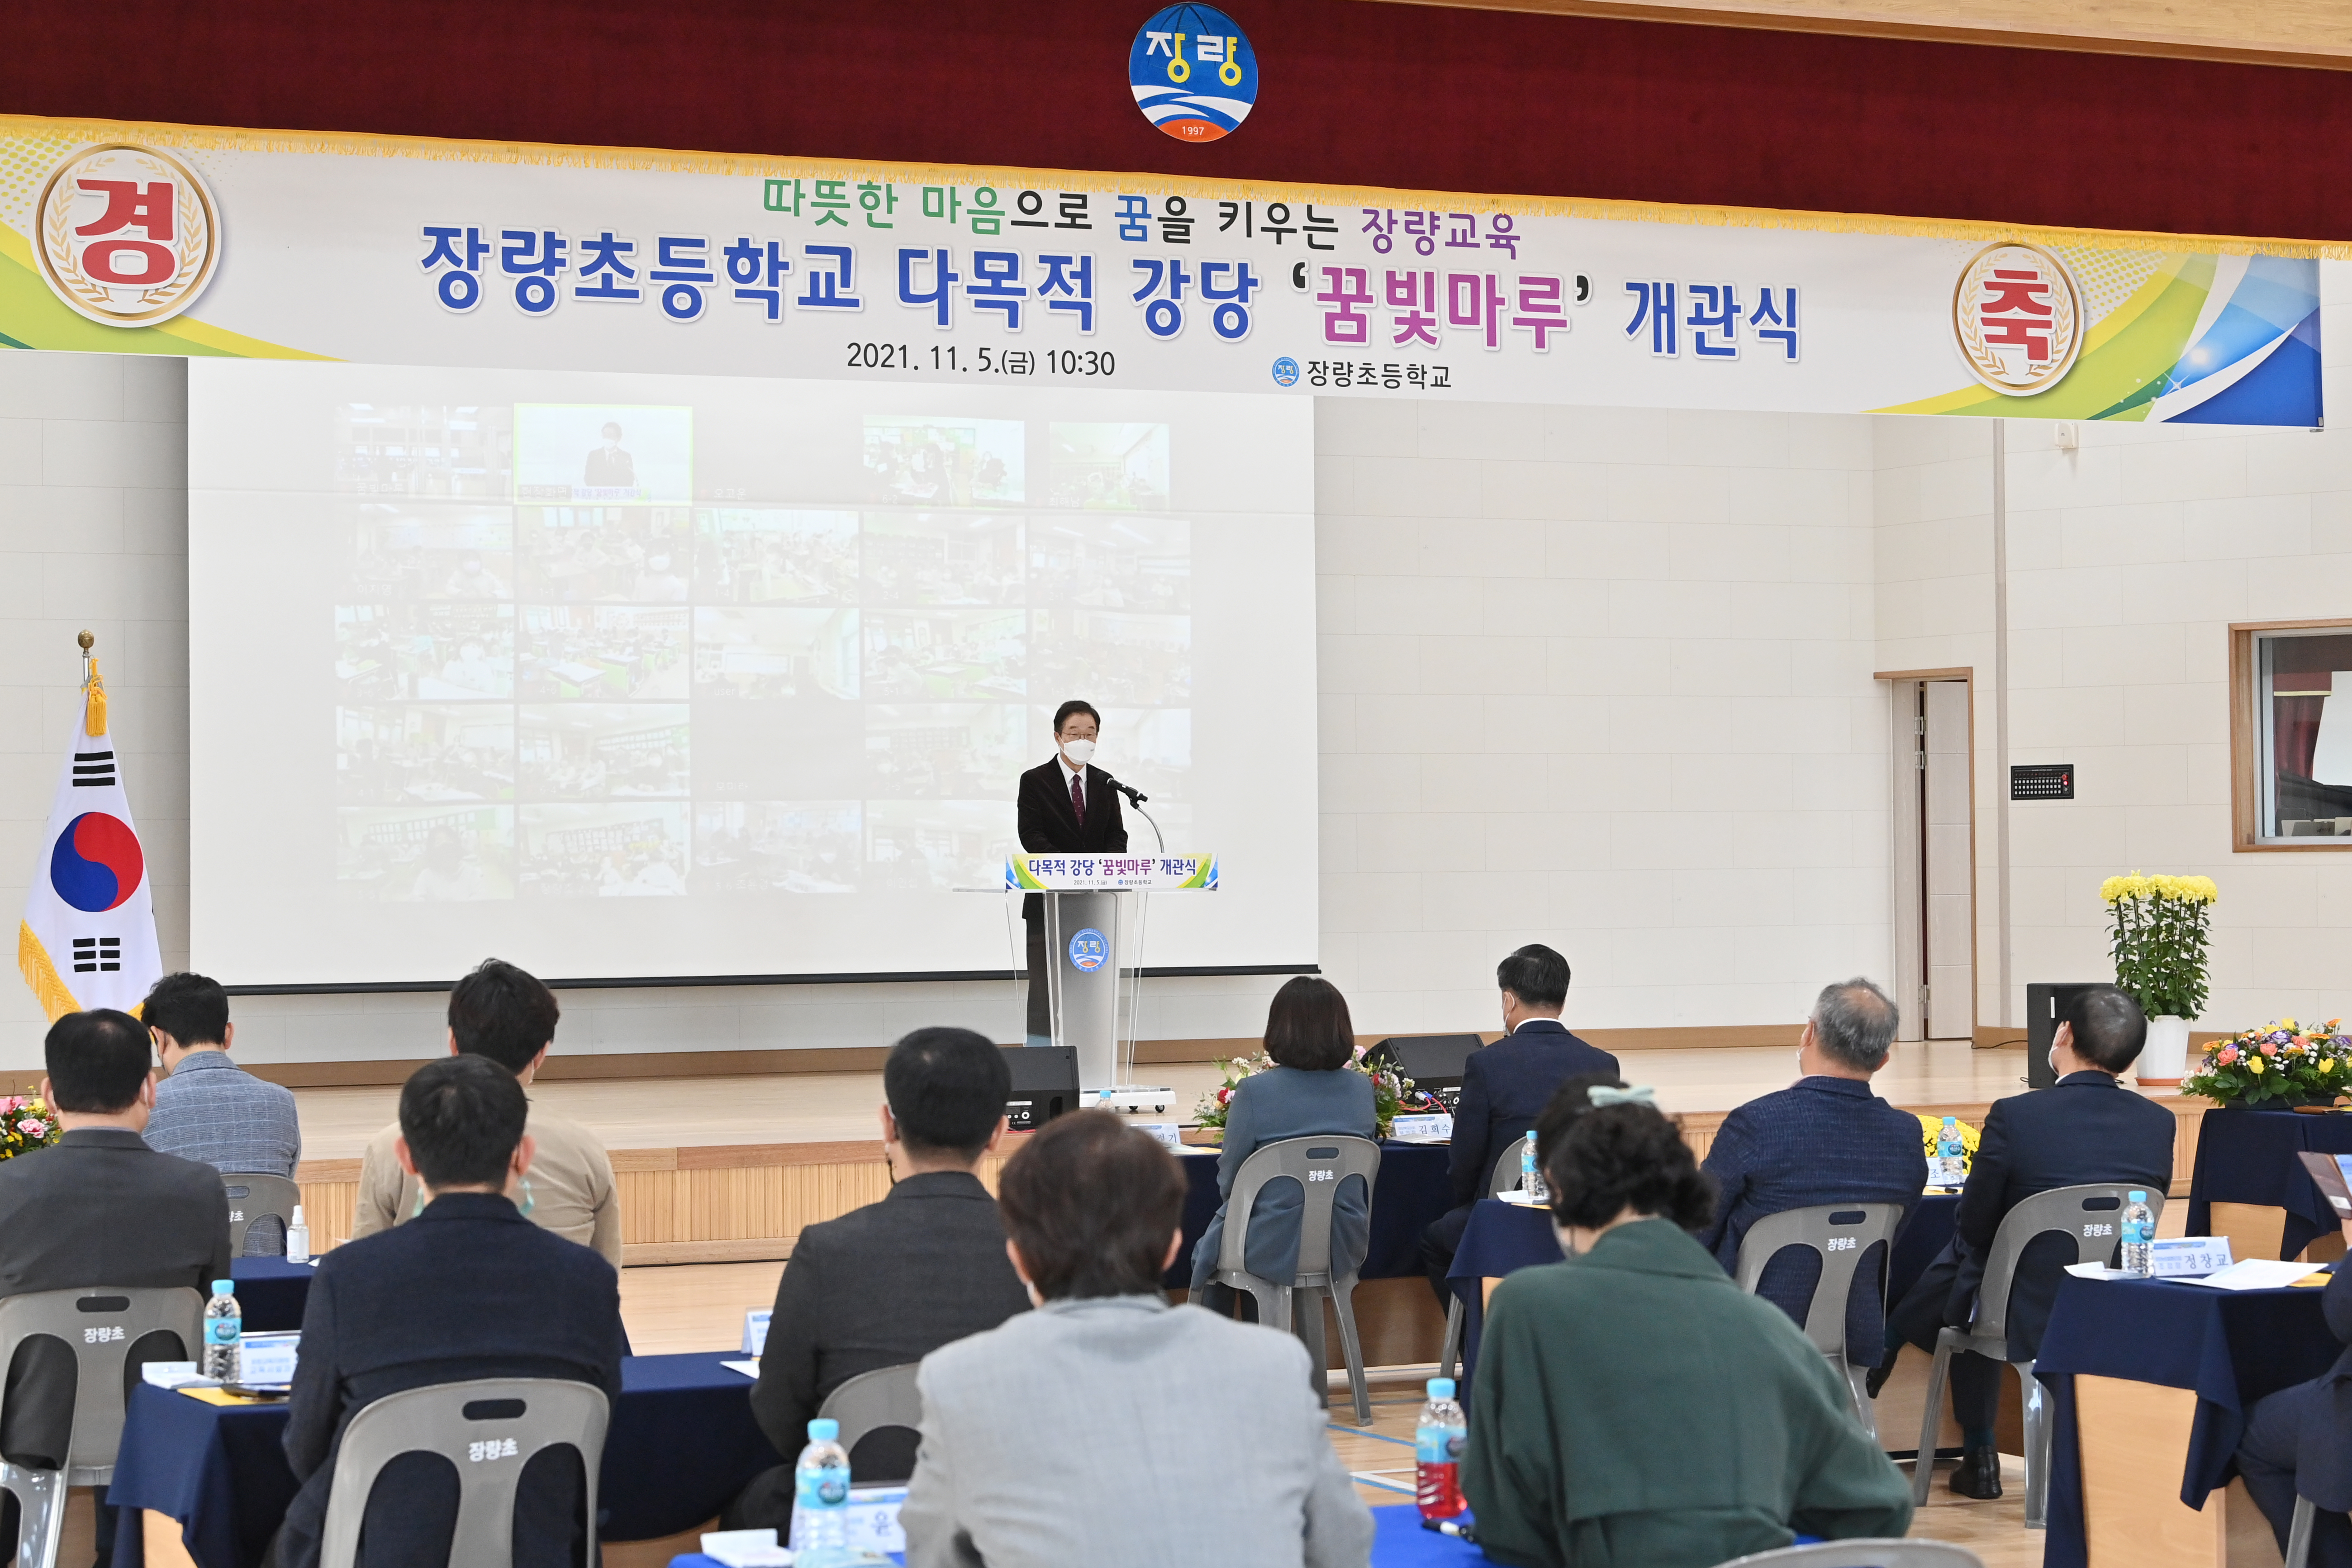 장량초등학교 강당 개관식에서 기념사 하는 경상북도교육감을 촬영 한 사진  확대 보기